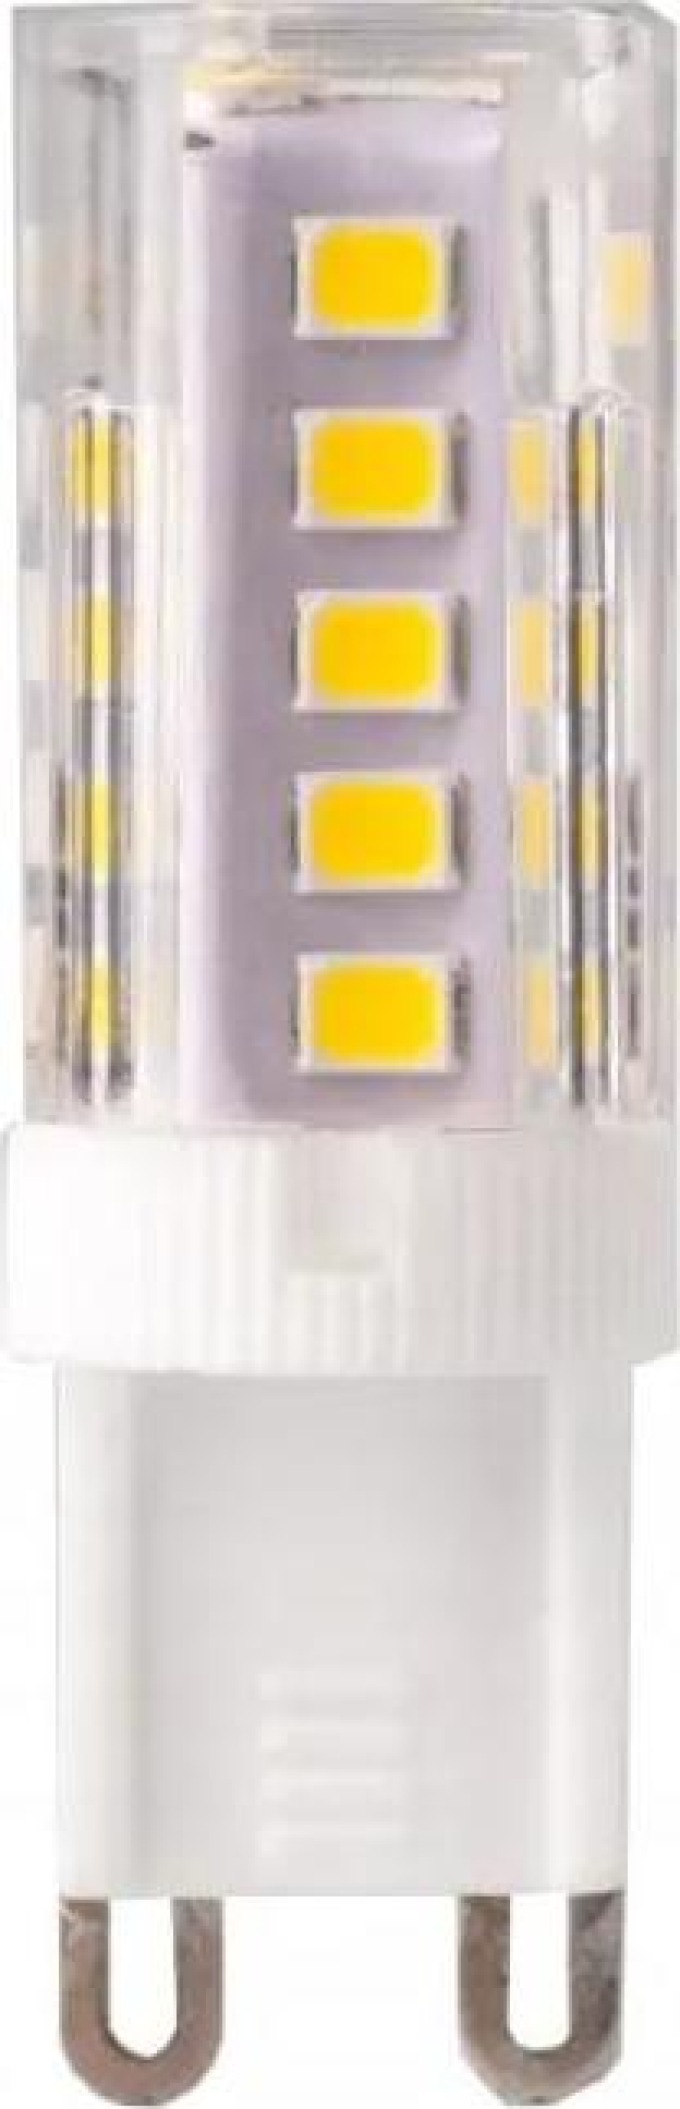 ECOLIGHT LED žárovka - G9 - 3W - neutrální bílá